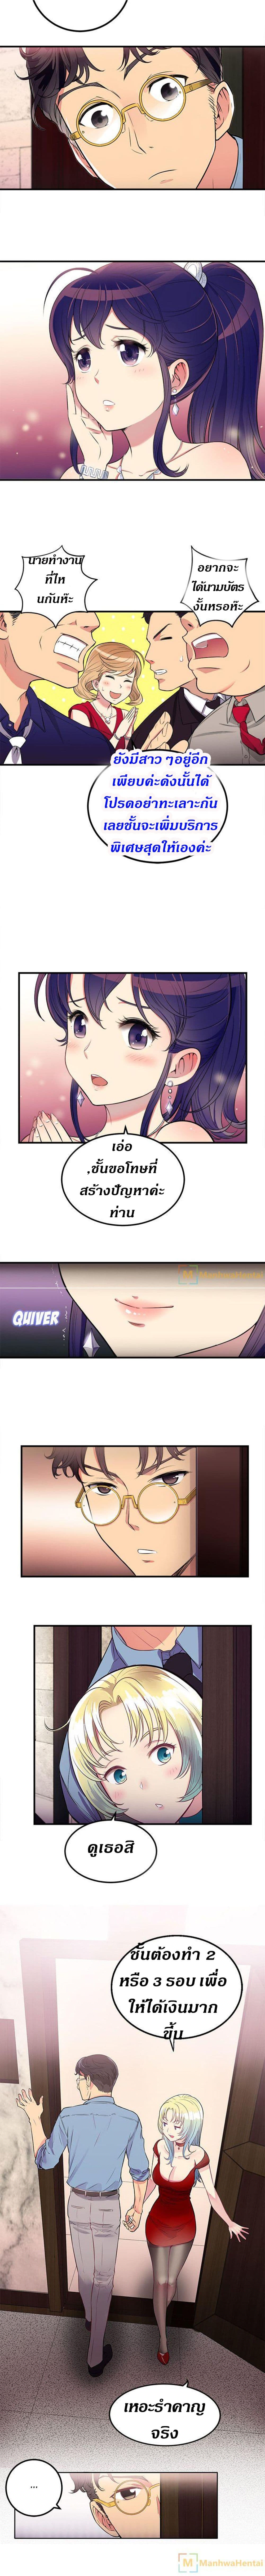 Yuri’s Part Time Job 2 (14)